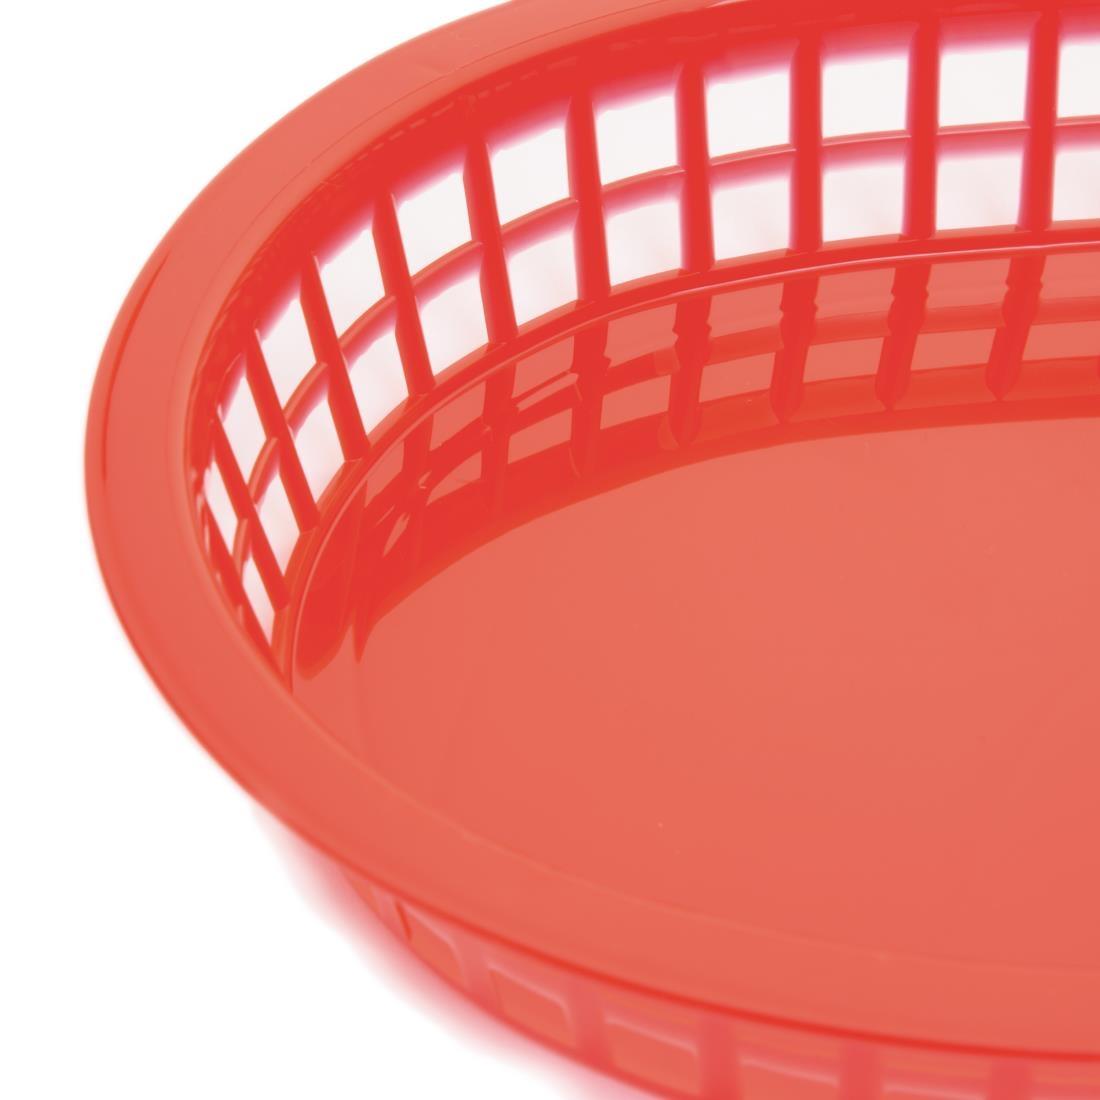 Oval Polypropylene Food Basket Red (Pack of 6) - GH967  - 2